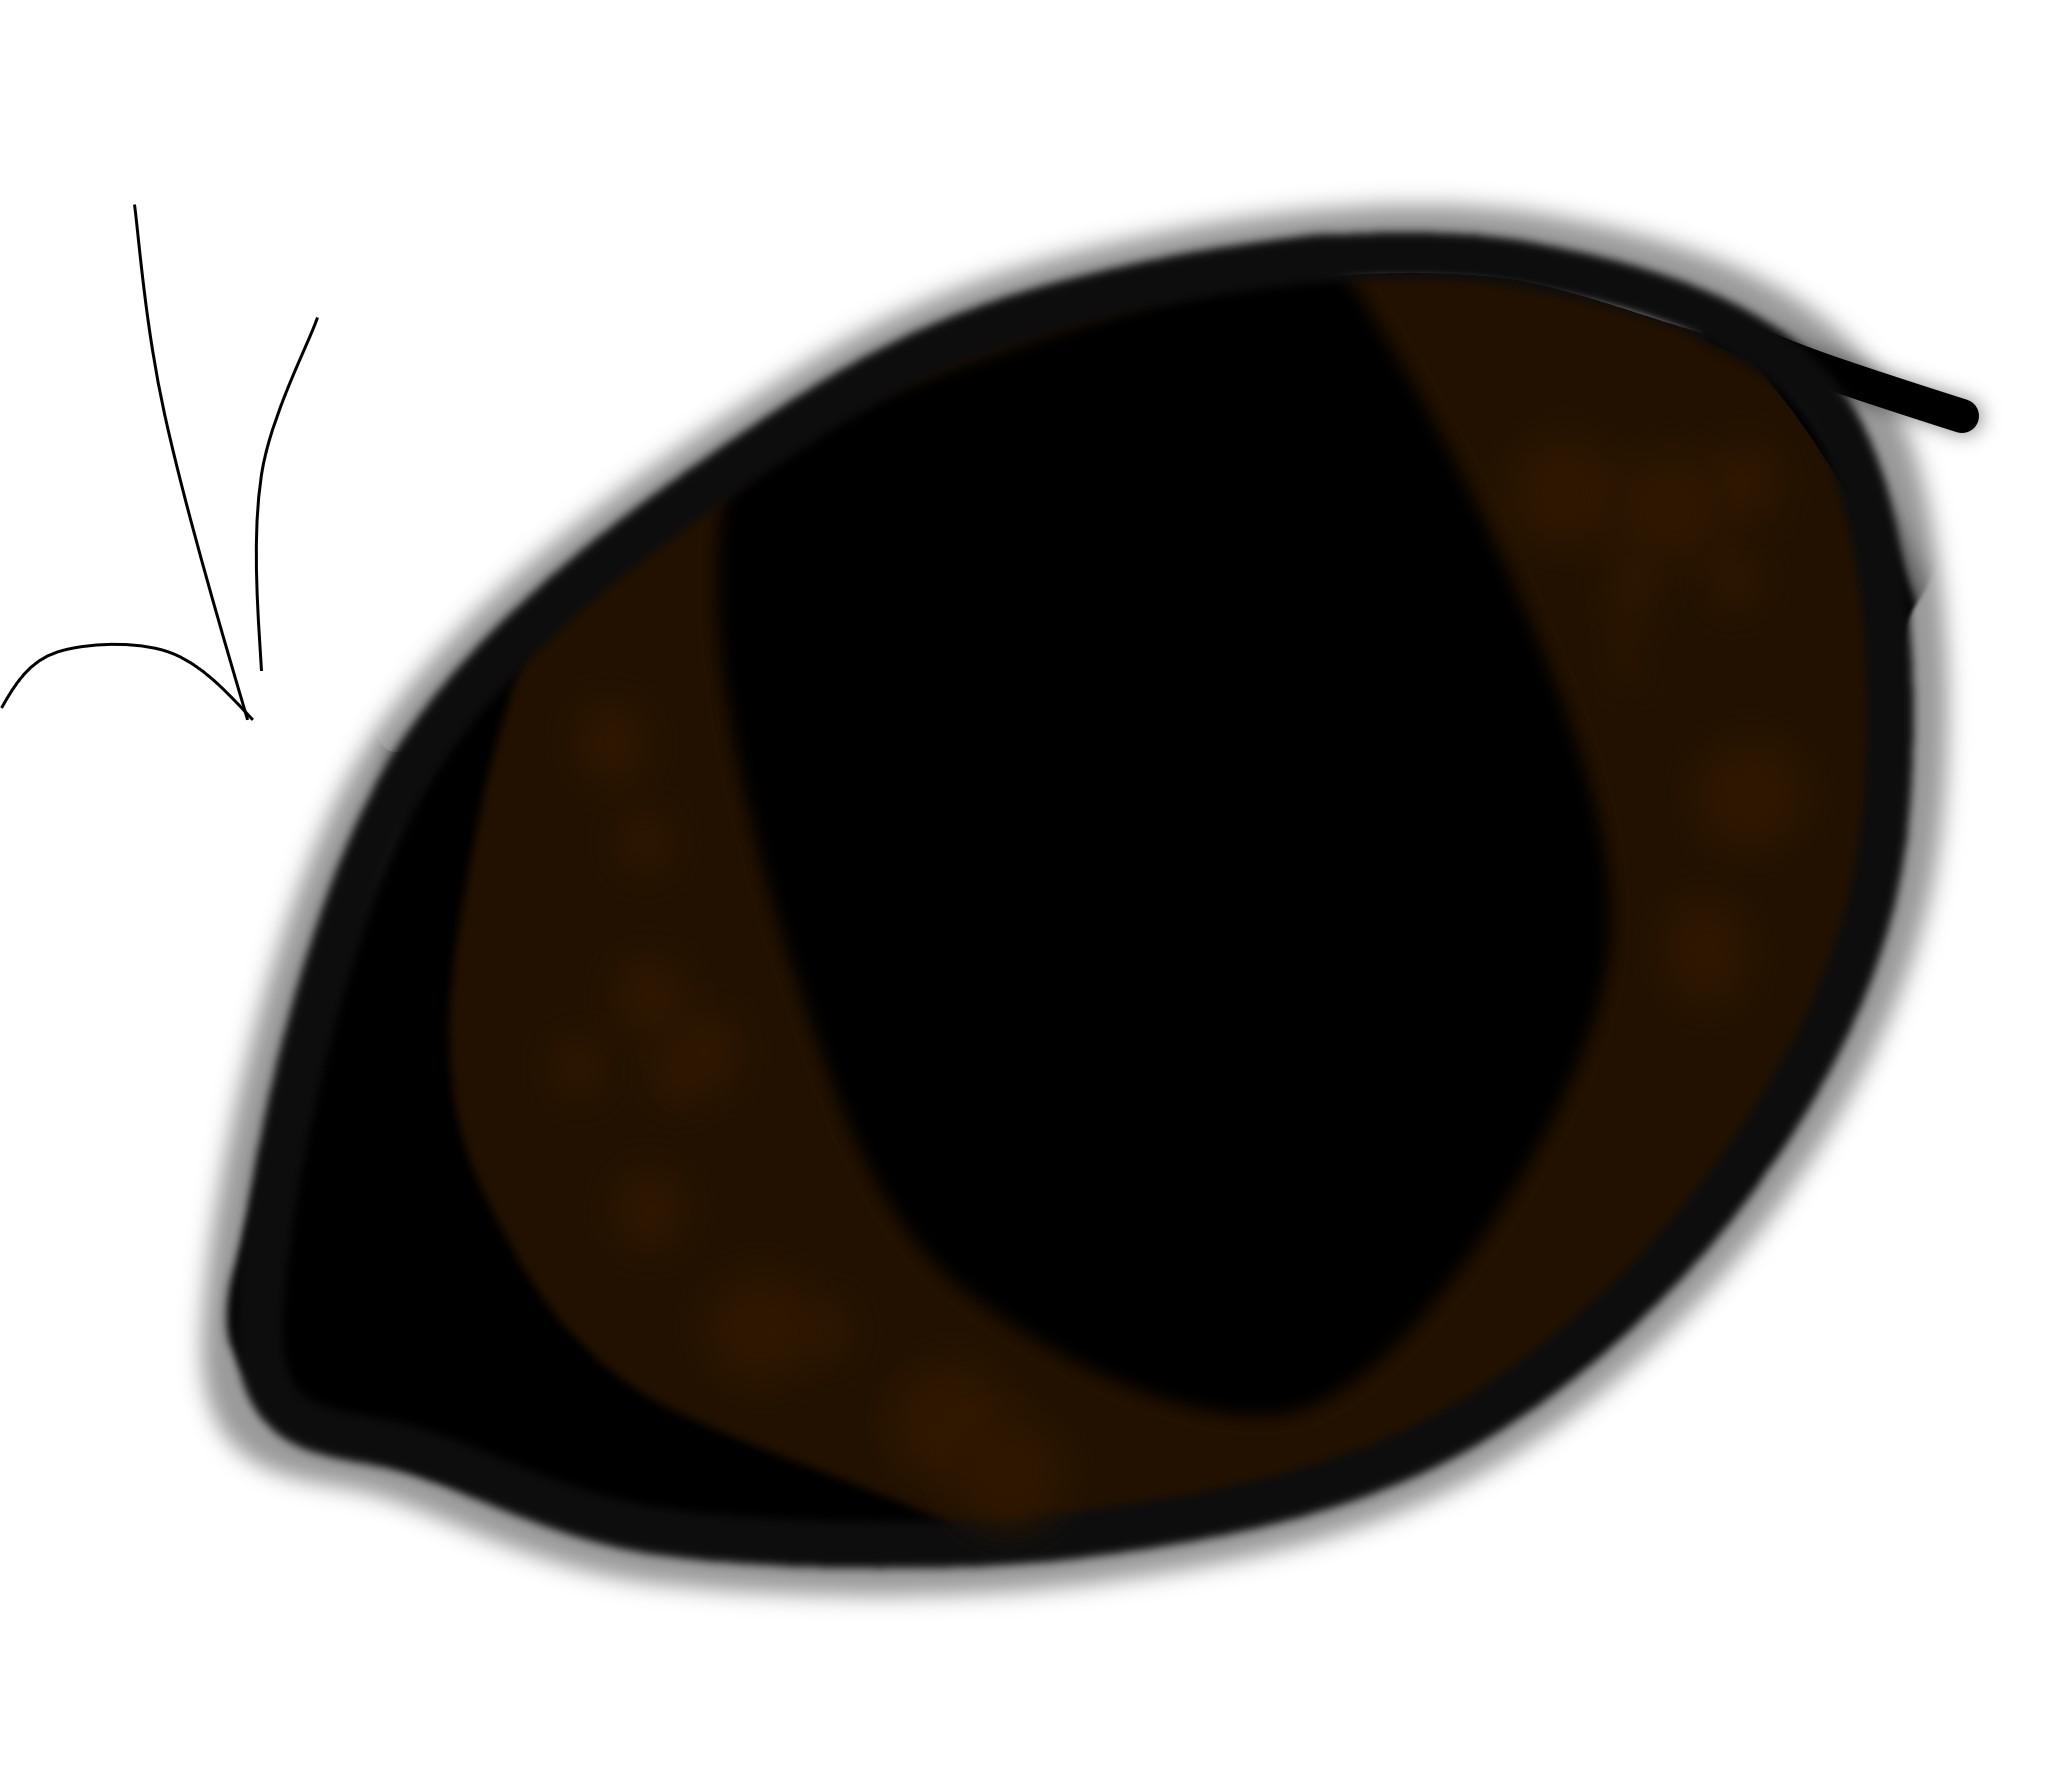 Schema eines Katzenauges mit total dunkel pigmentierter Iris und unvollständig enger Pupille.